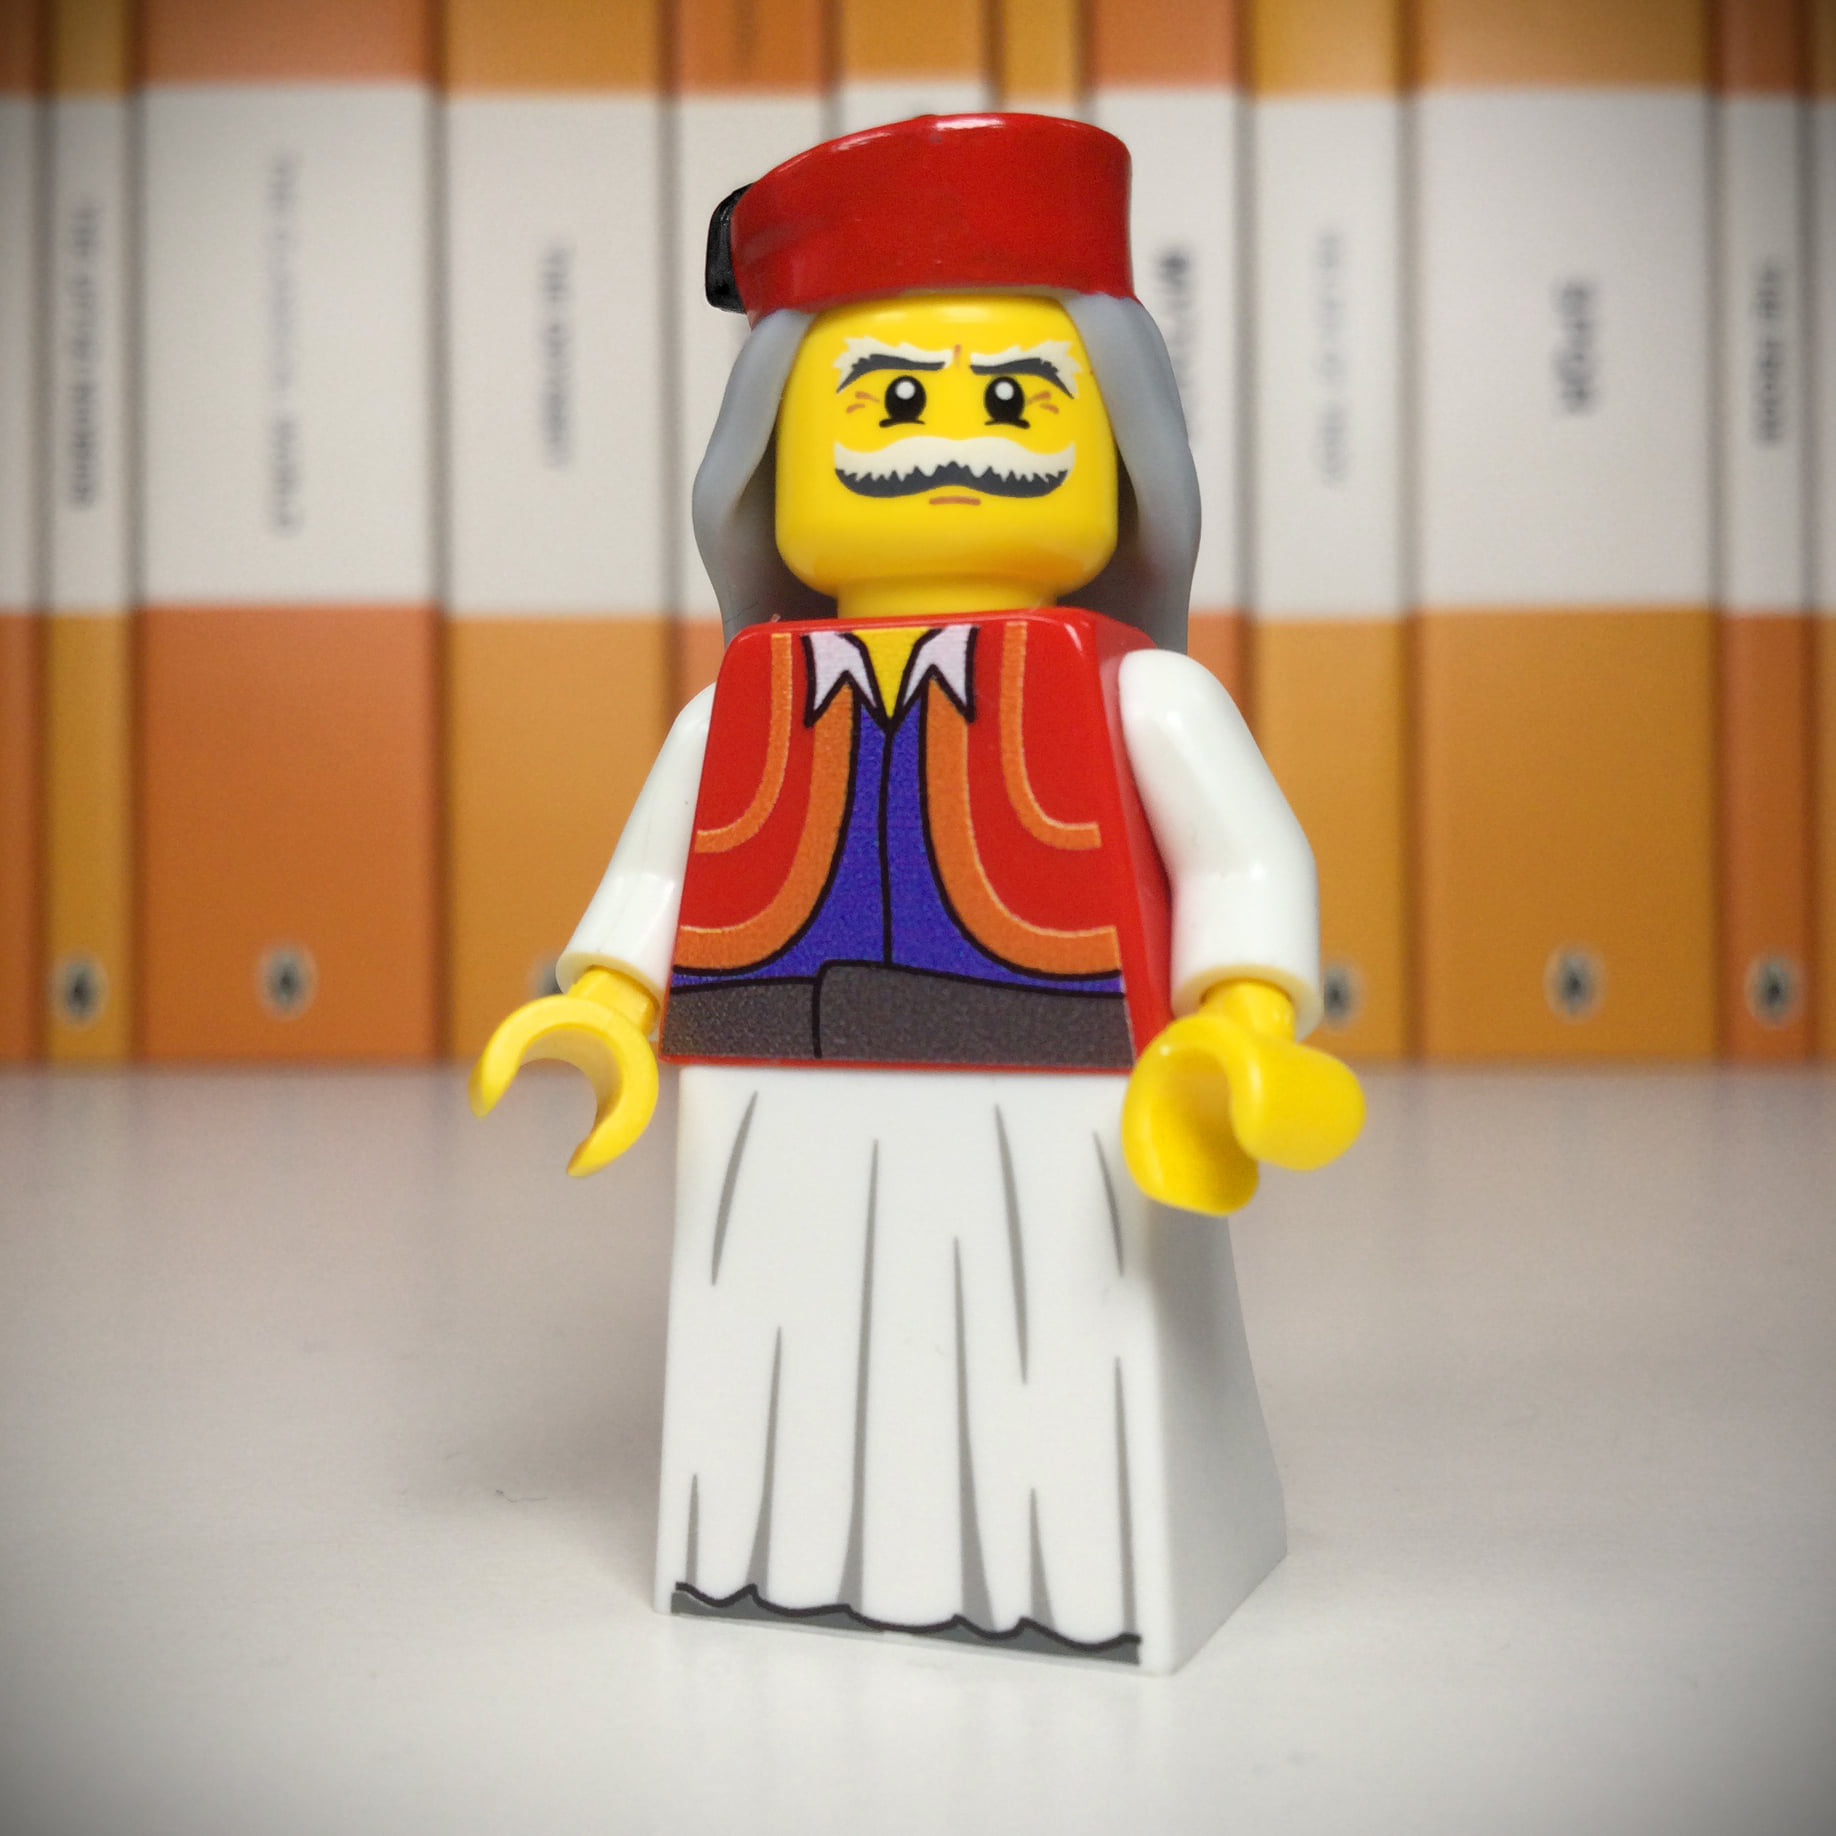 Lego του Θεόδωρου Κολοκοτρώνη με αφορμή τα 200 χρόνια από την Ελληνική Επανάσταση, φωτογραφία/credits: Lego Classicists